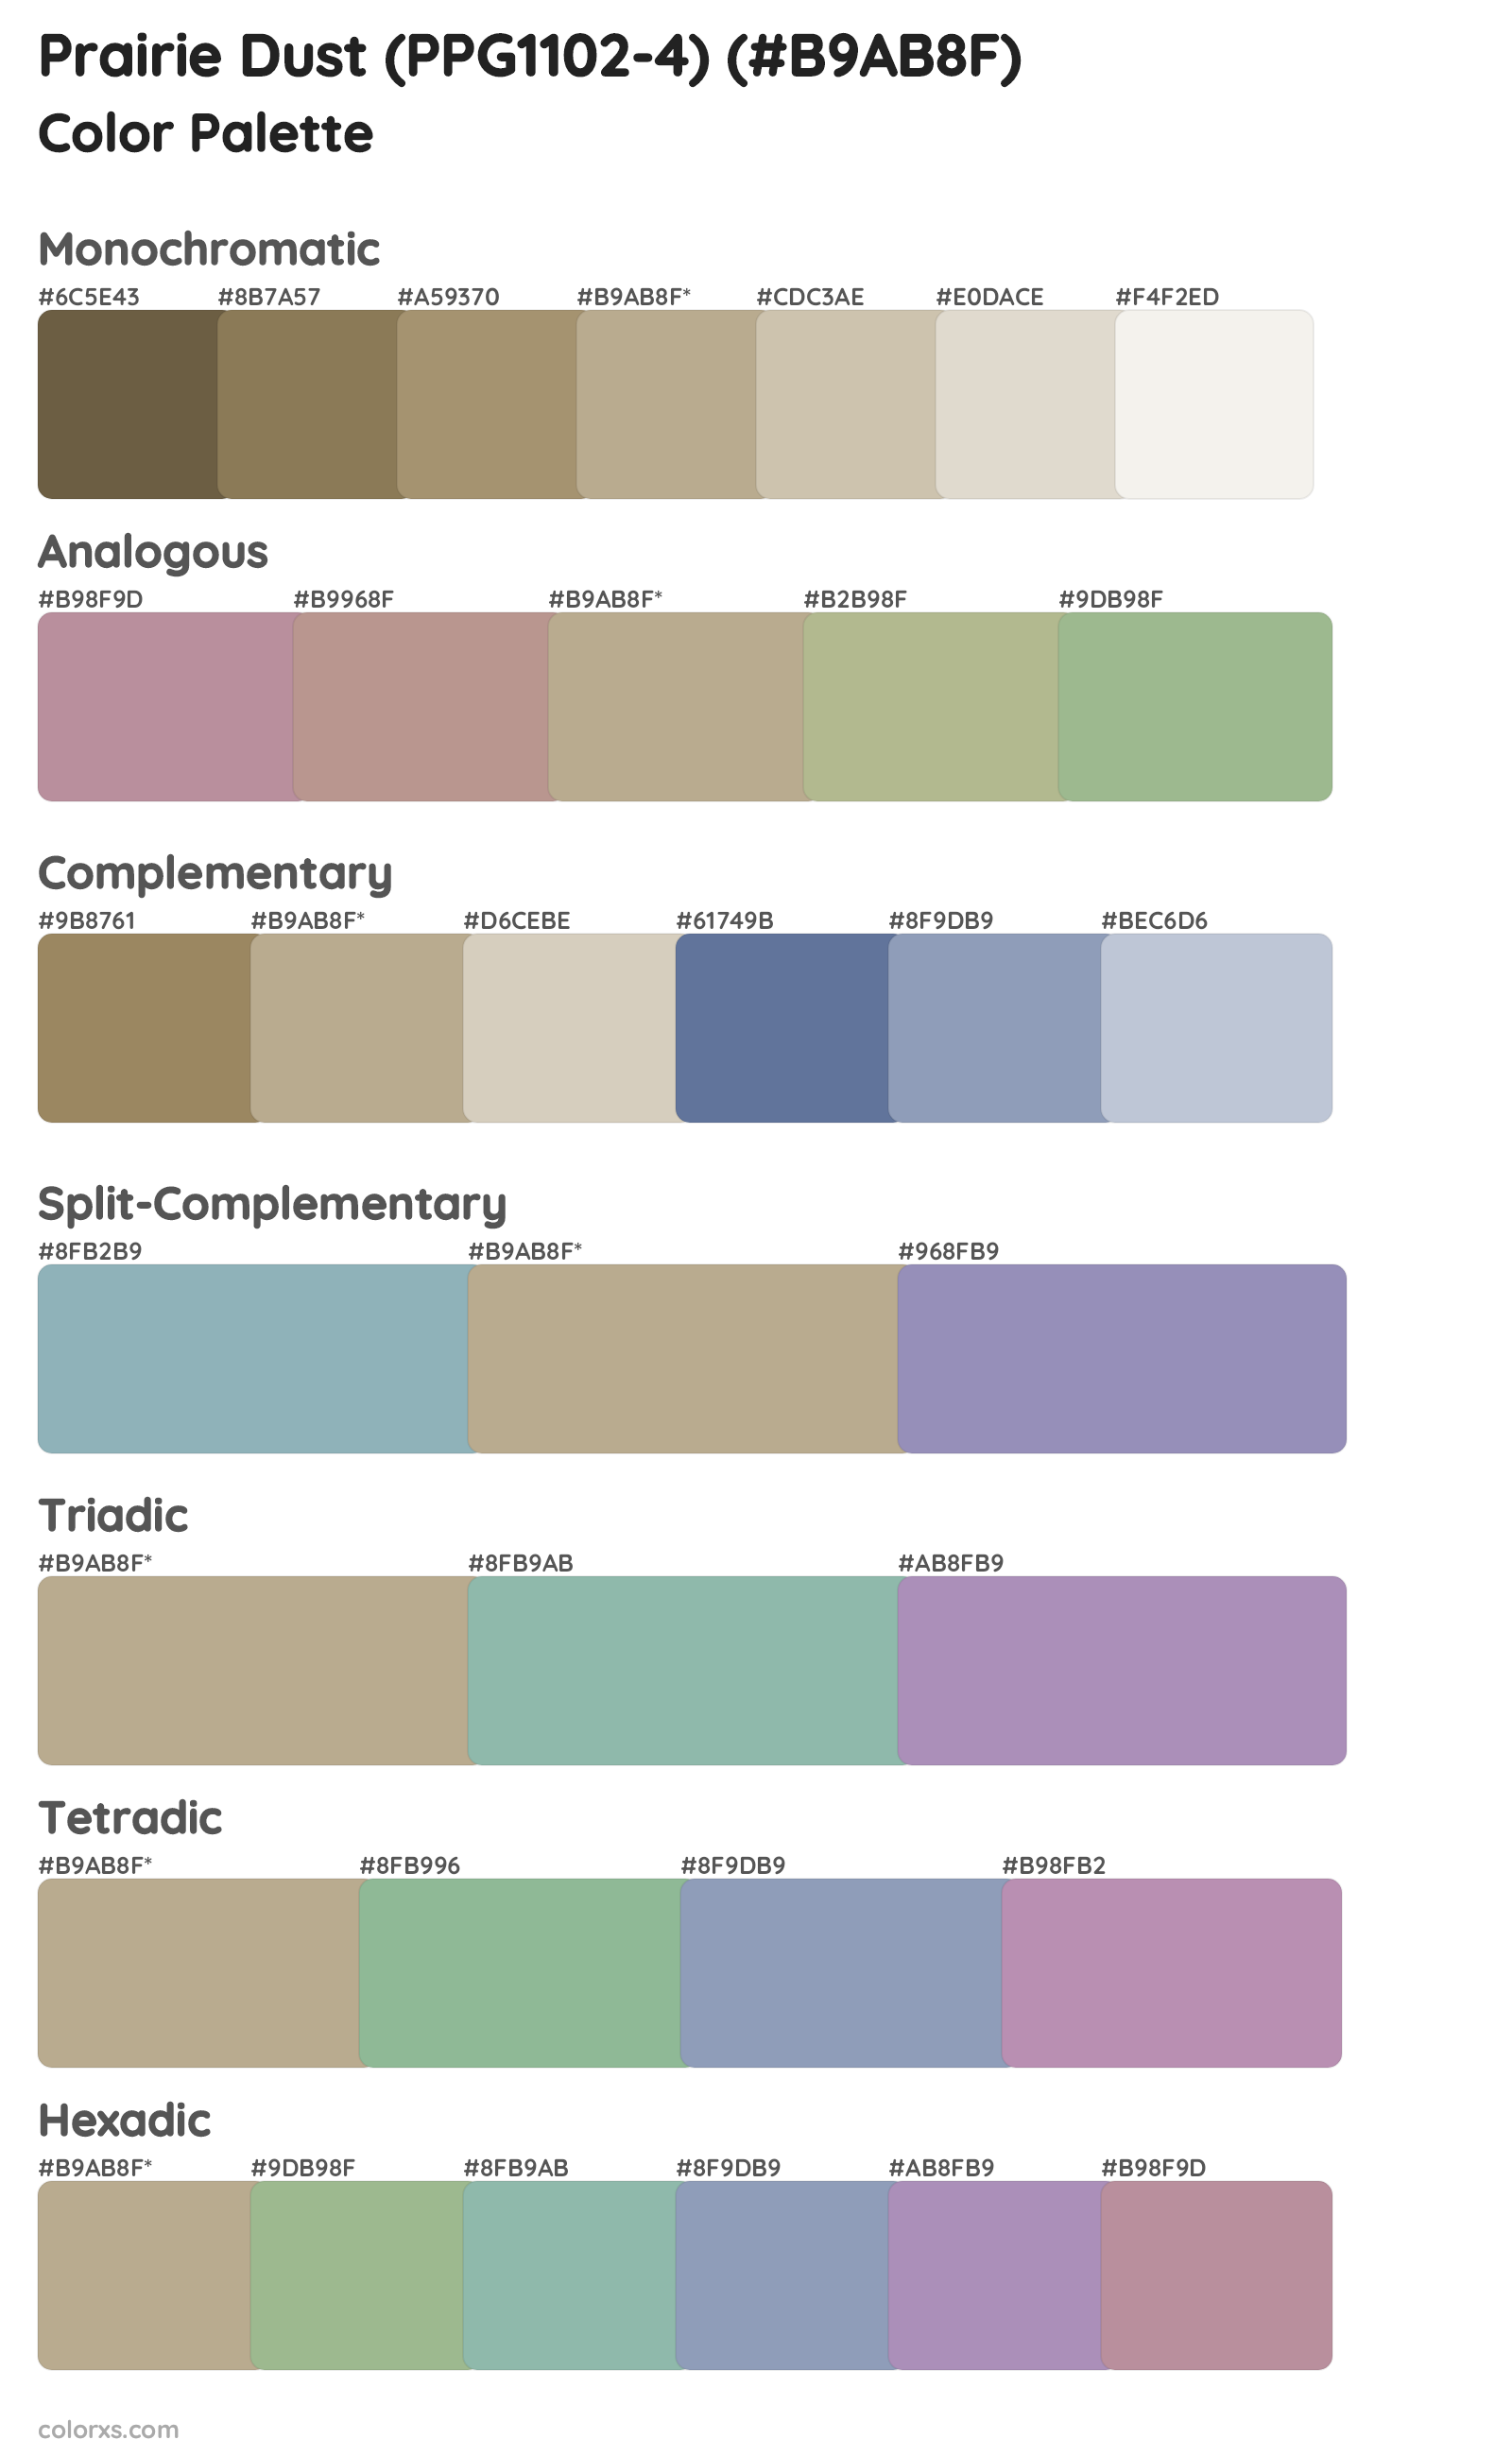 Prairie Dust (PPG1102-4) Color Scheme Palettes